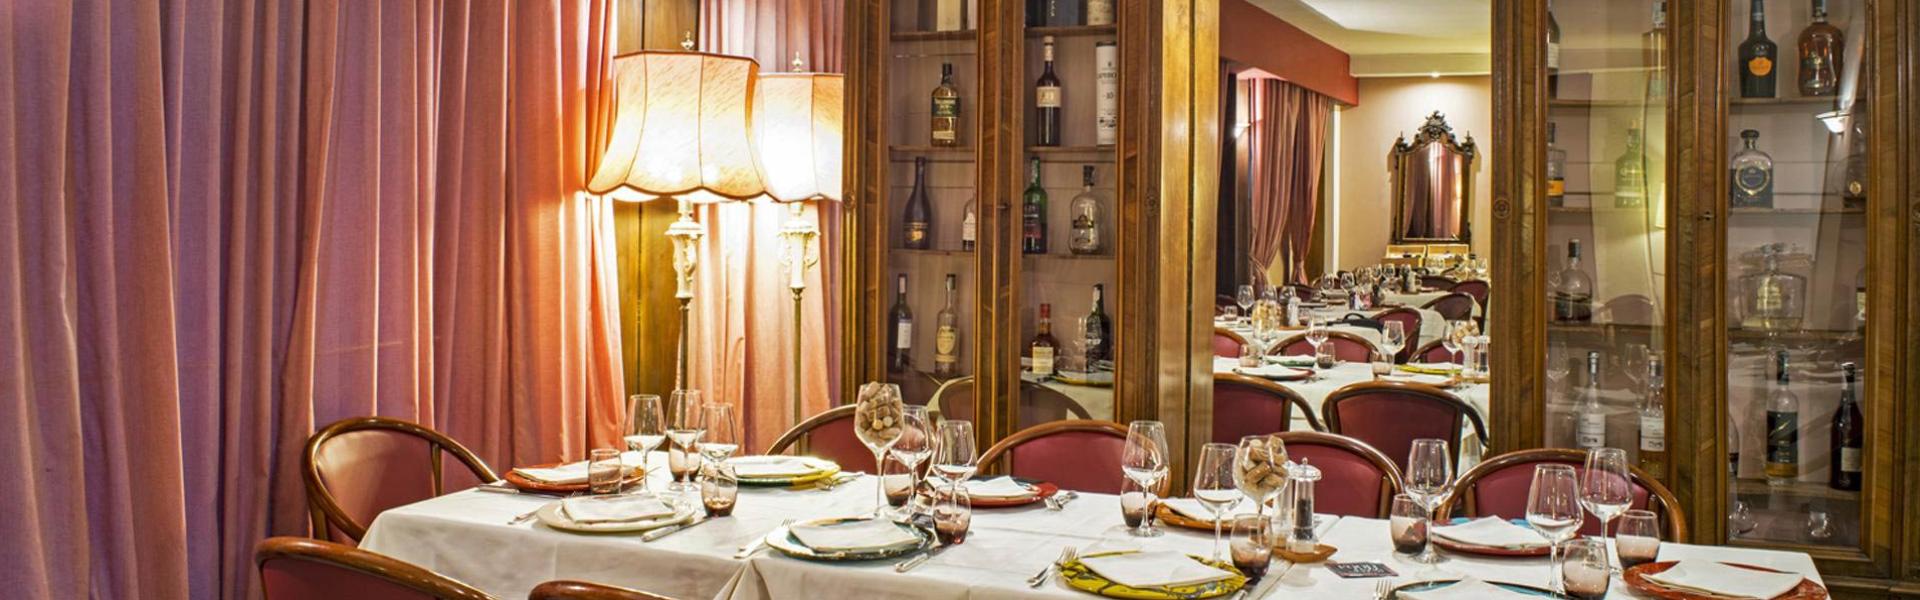 hotelgio it ristorante-enoteca-gio-arte-e-vini-perugia 001